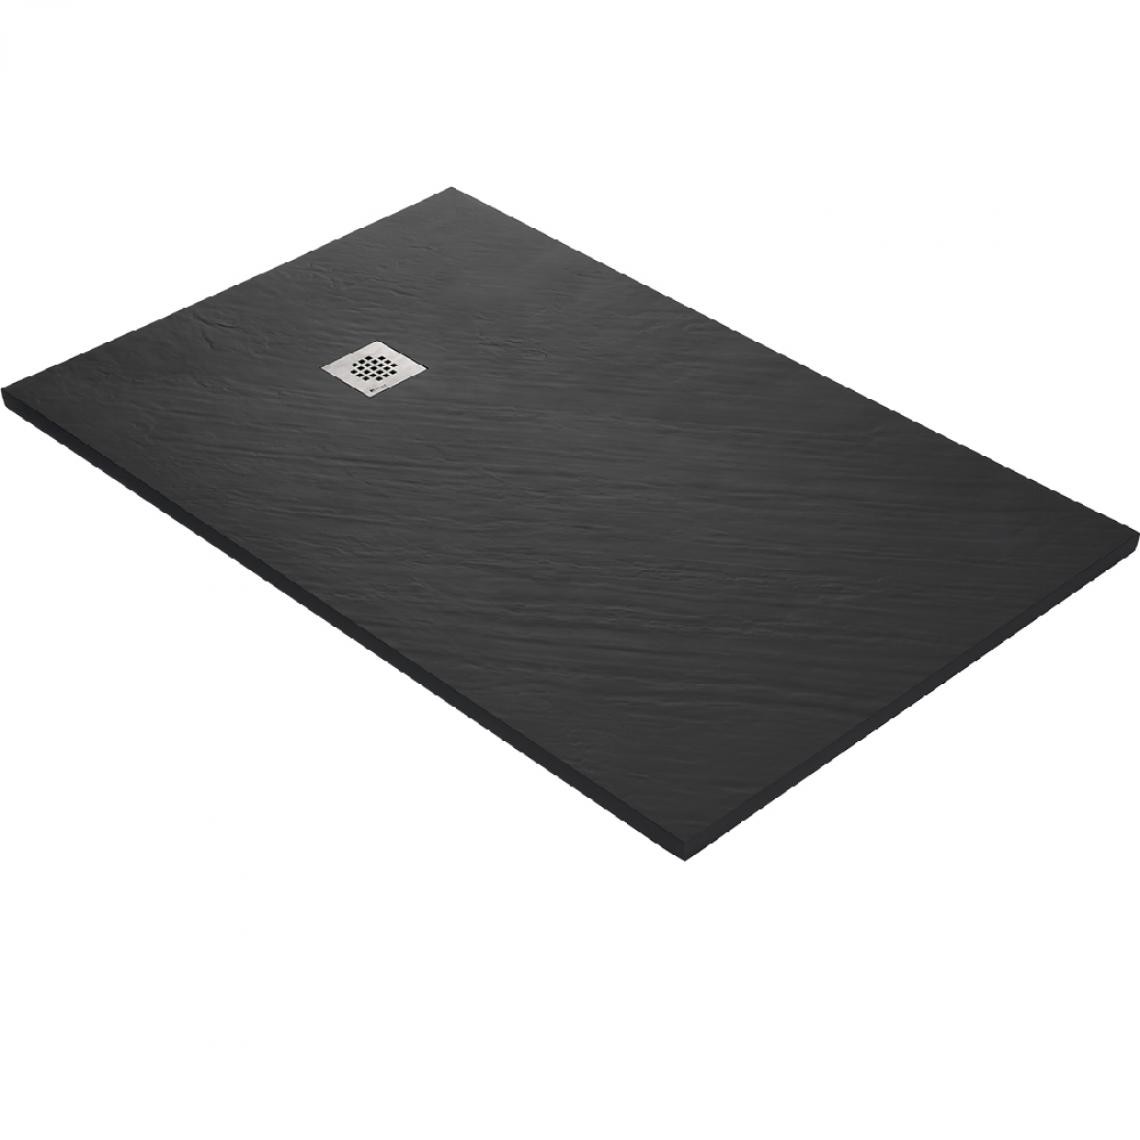 U-Tile - Receveur de douche 160 x 90 cm résine finition pierre noir - Receveur de douche